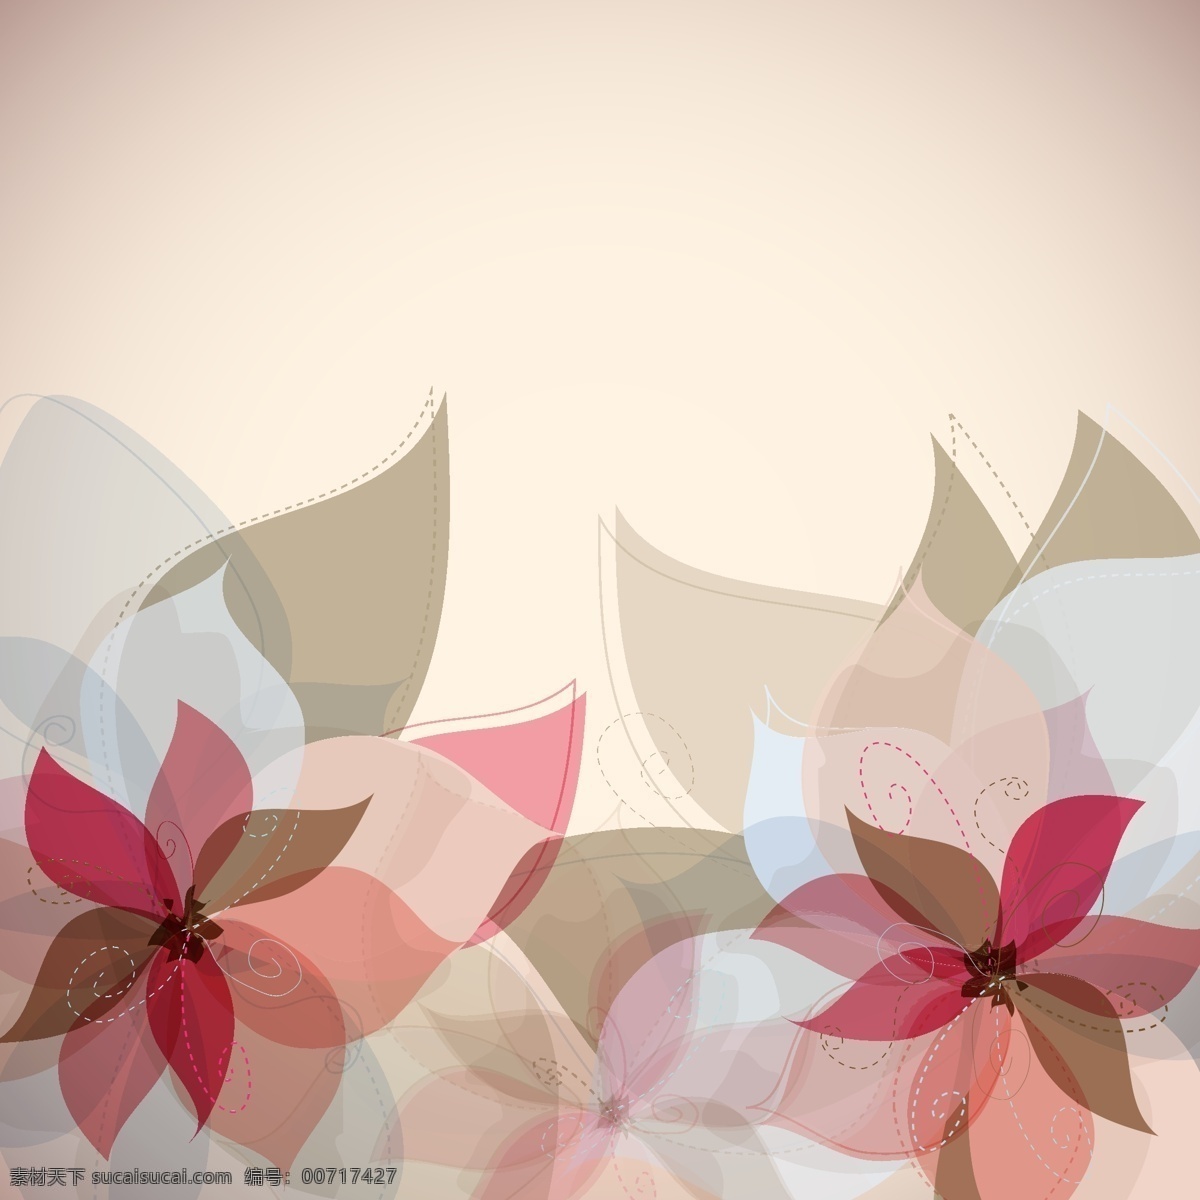 花的抽象背景 抽象背景 红色花 十字花 白色花瓣